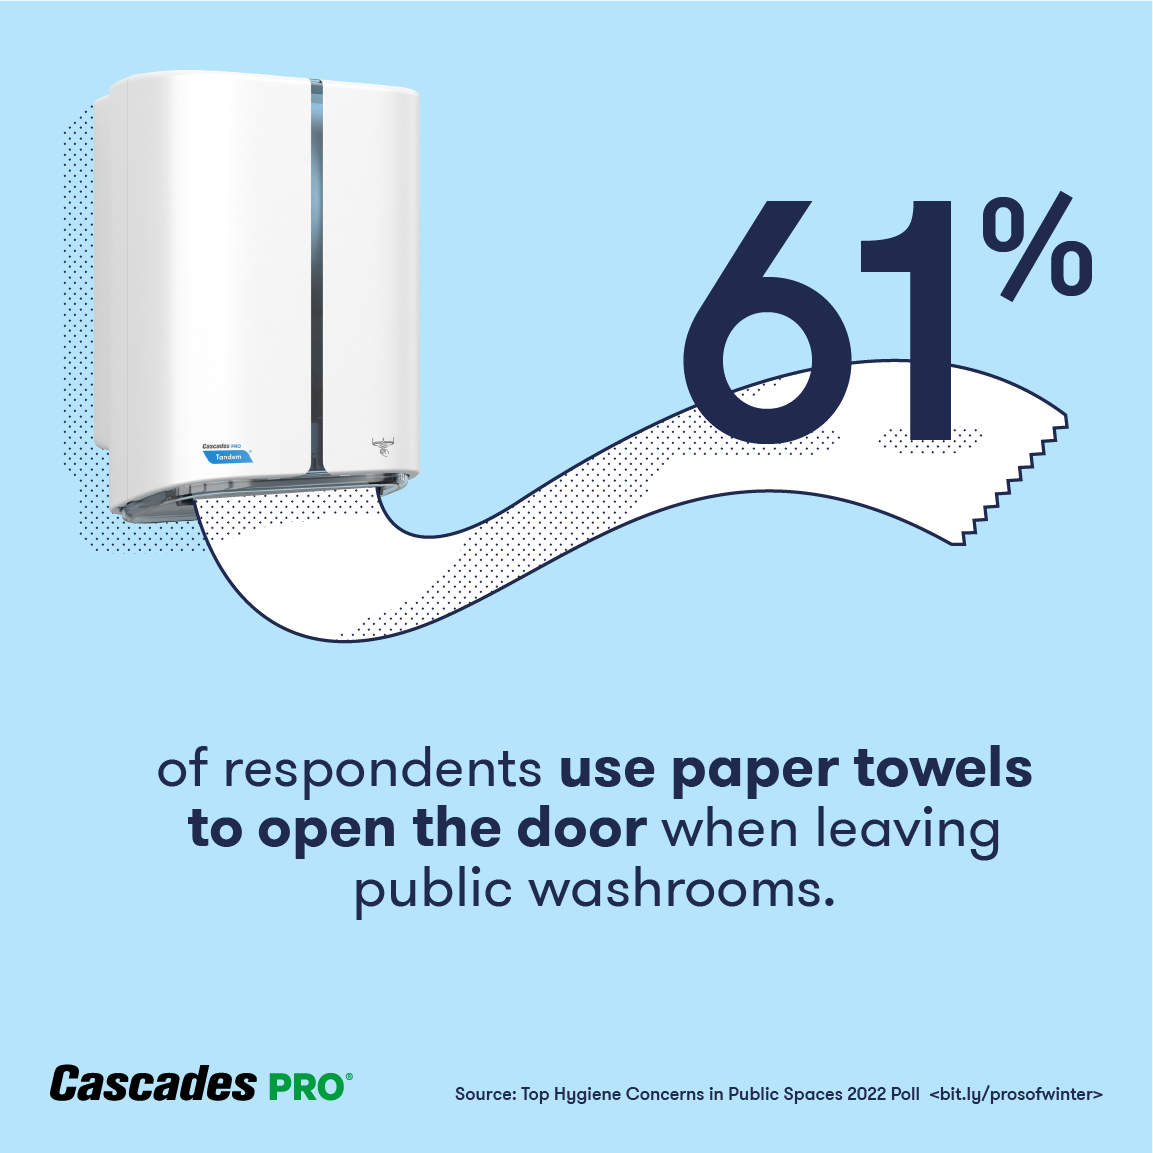 61% of respondents use paper towel to open door in public washroom